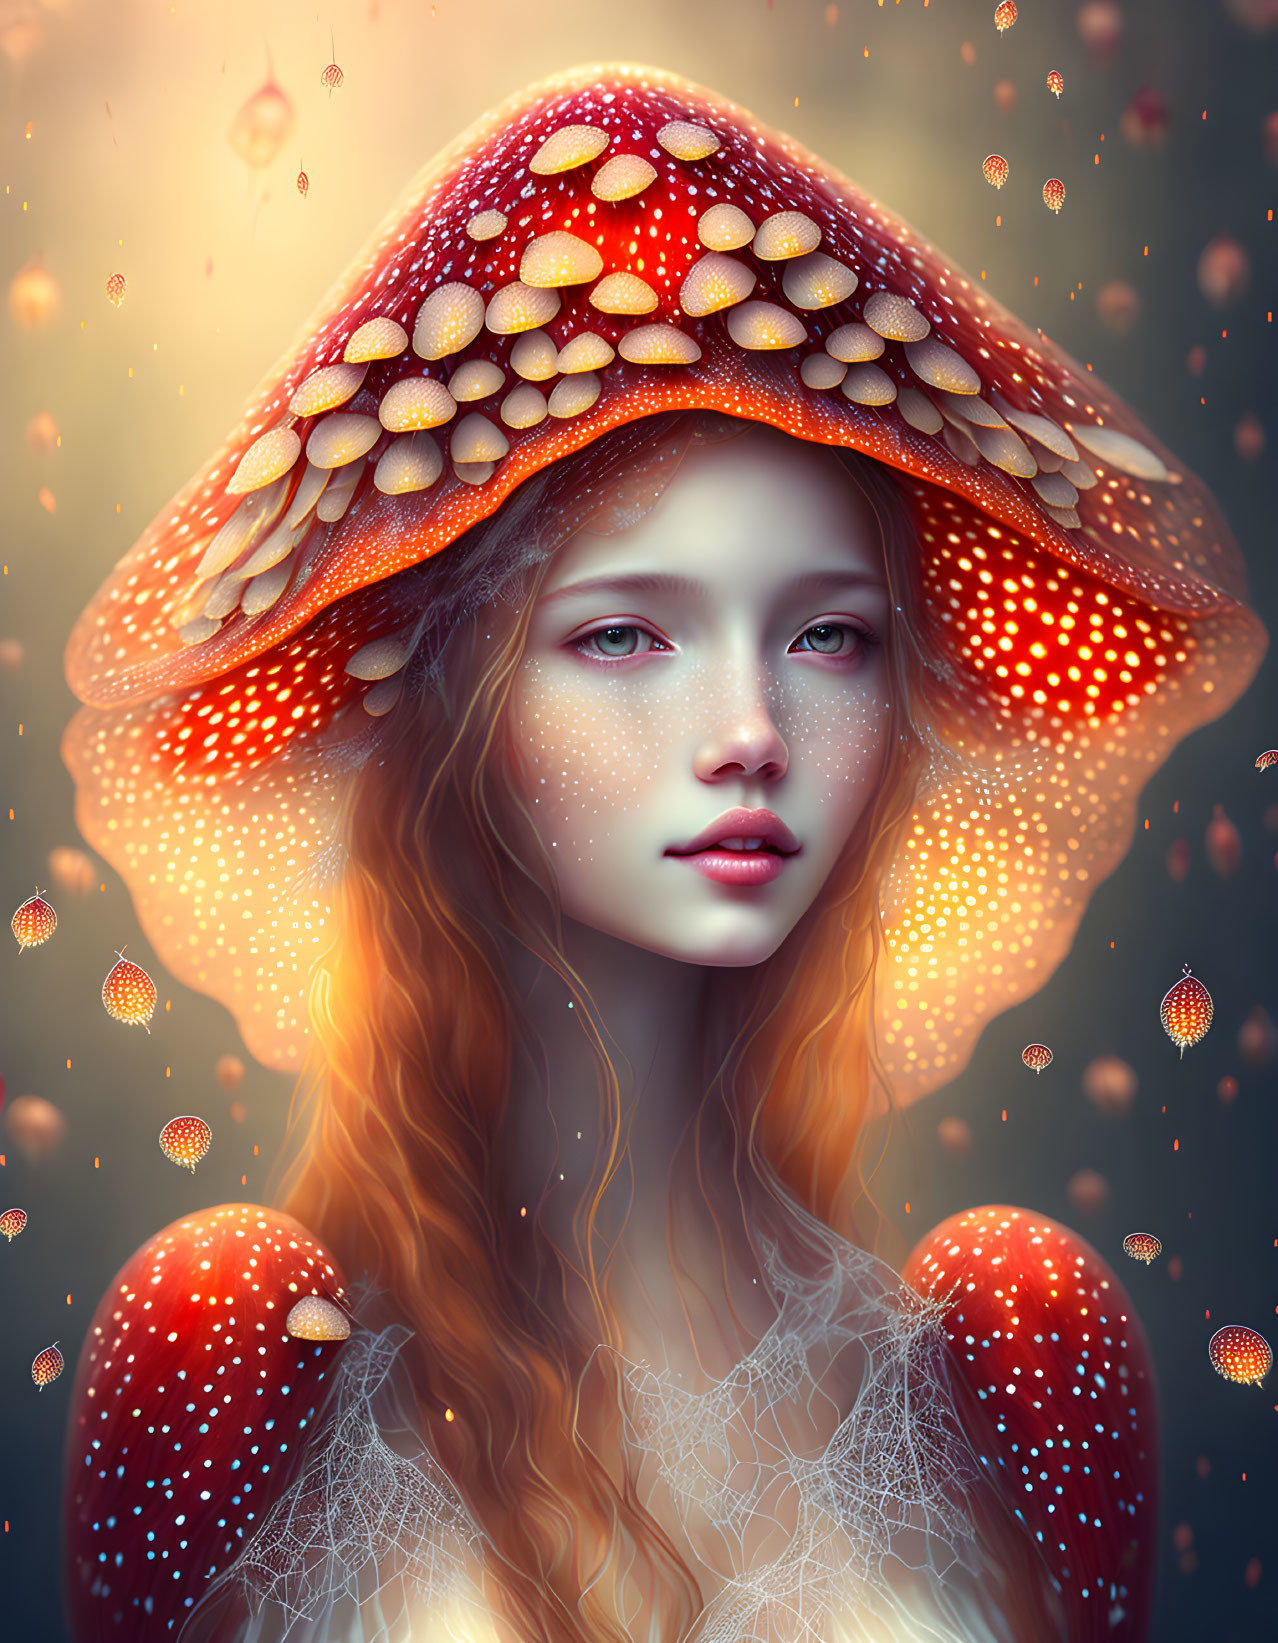 The Mushroom fairy